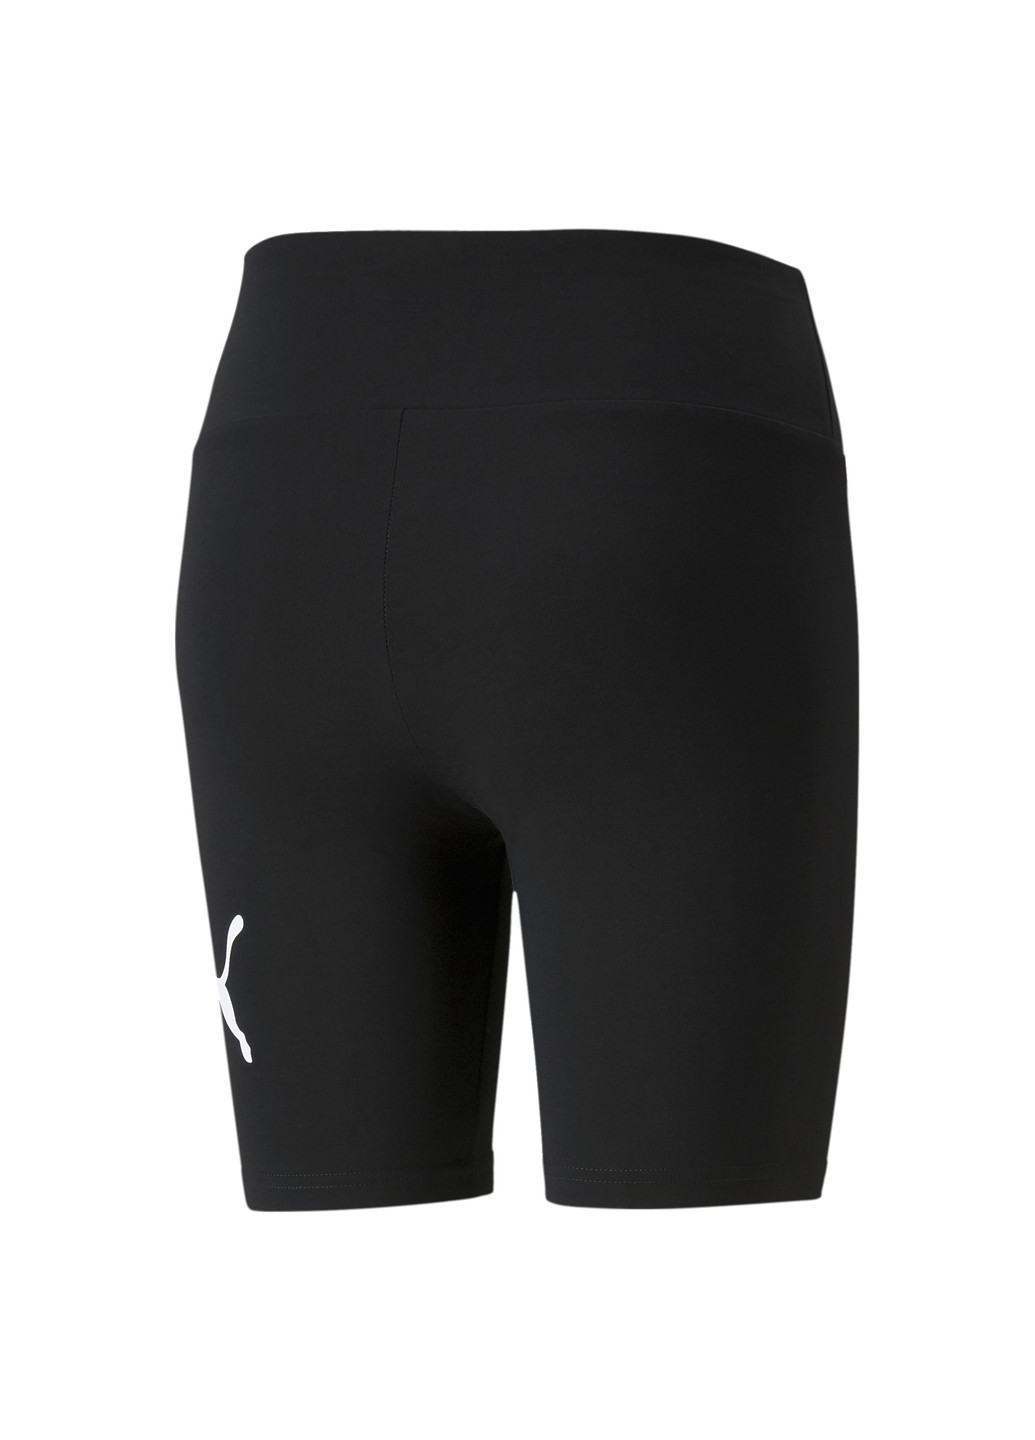 Черные демисезонные леггинсы essentials logo women's short leggings Puma